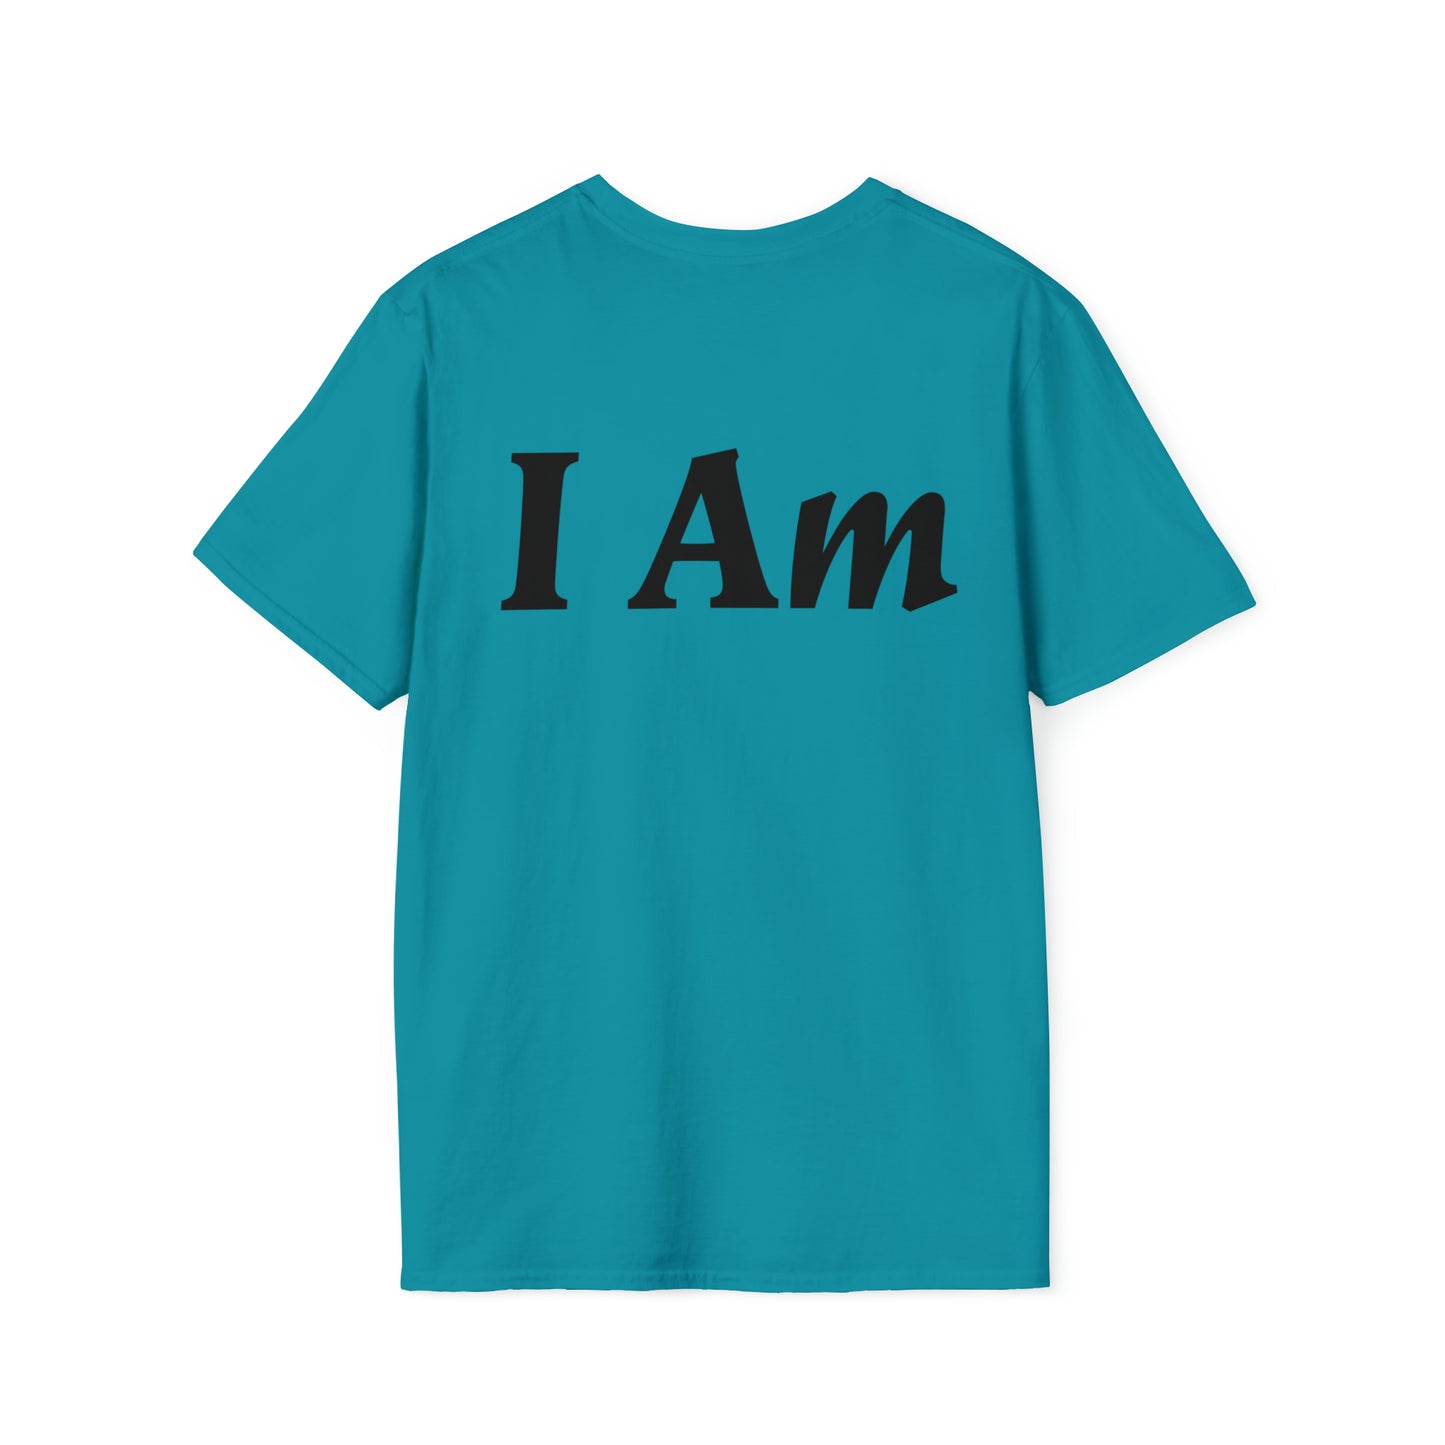 I Am T-shirt